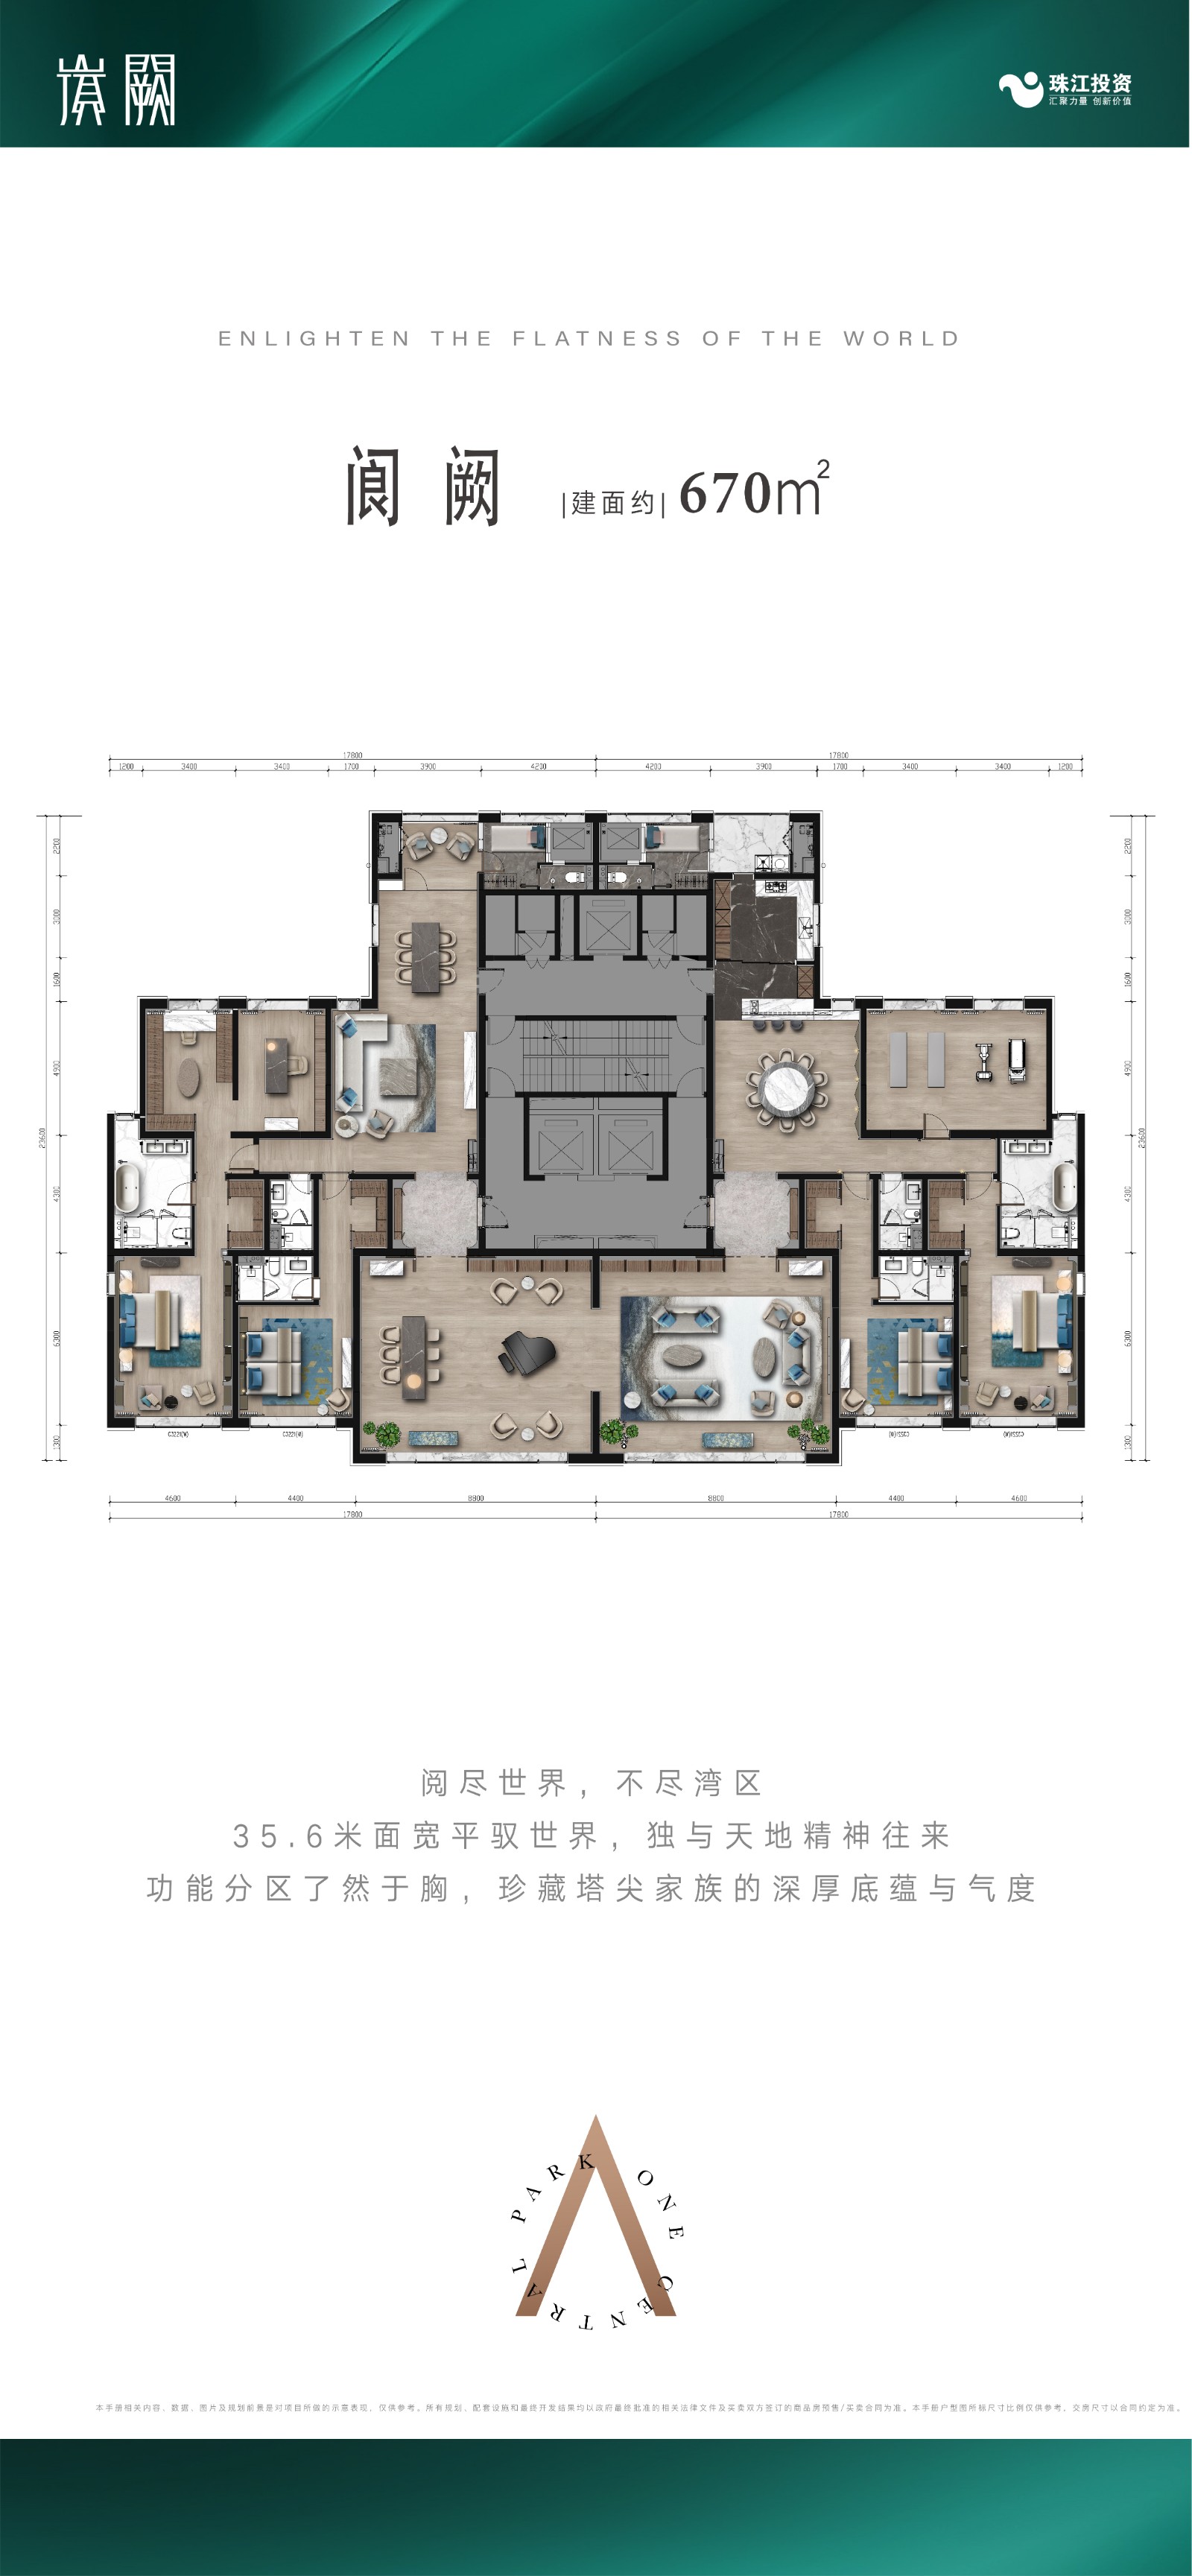 北京珠江阙超大平层 ,0室,670平米户型图-珠江阙户型-北京购房网